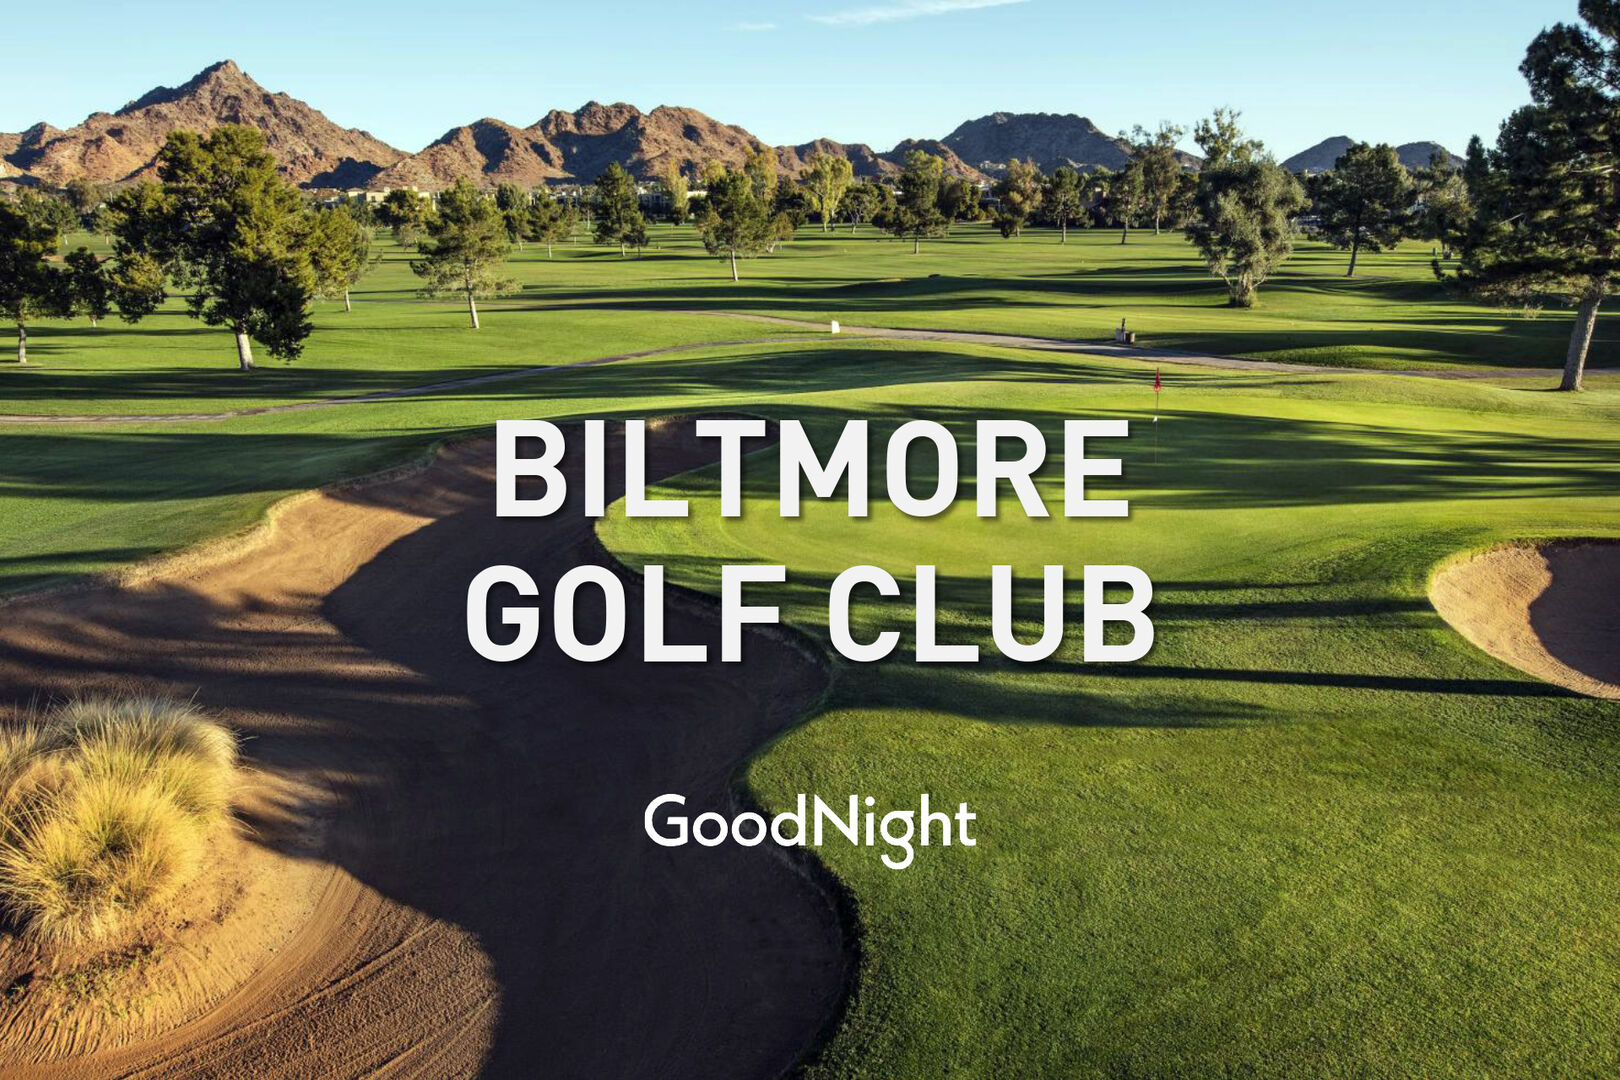 Biltmore Golf Club: 13 mins